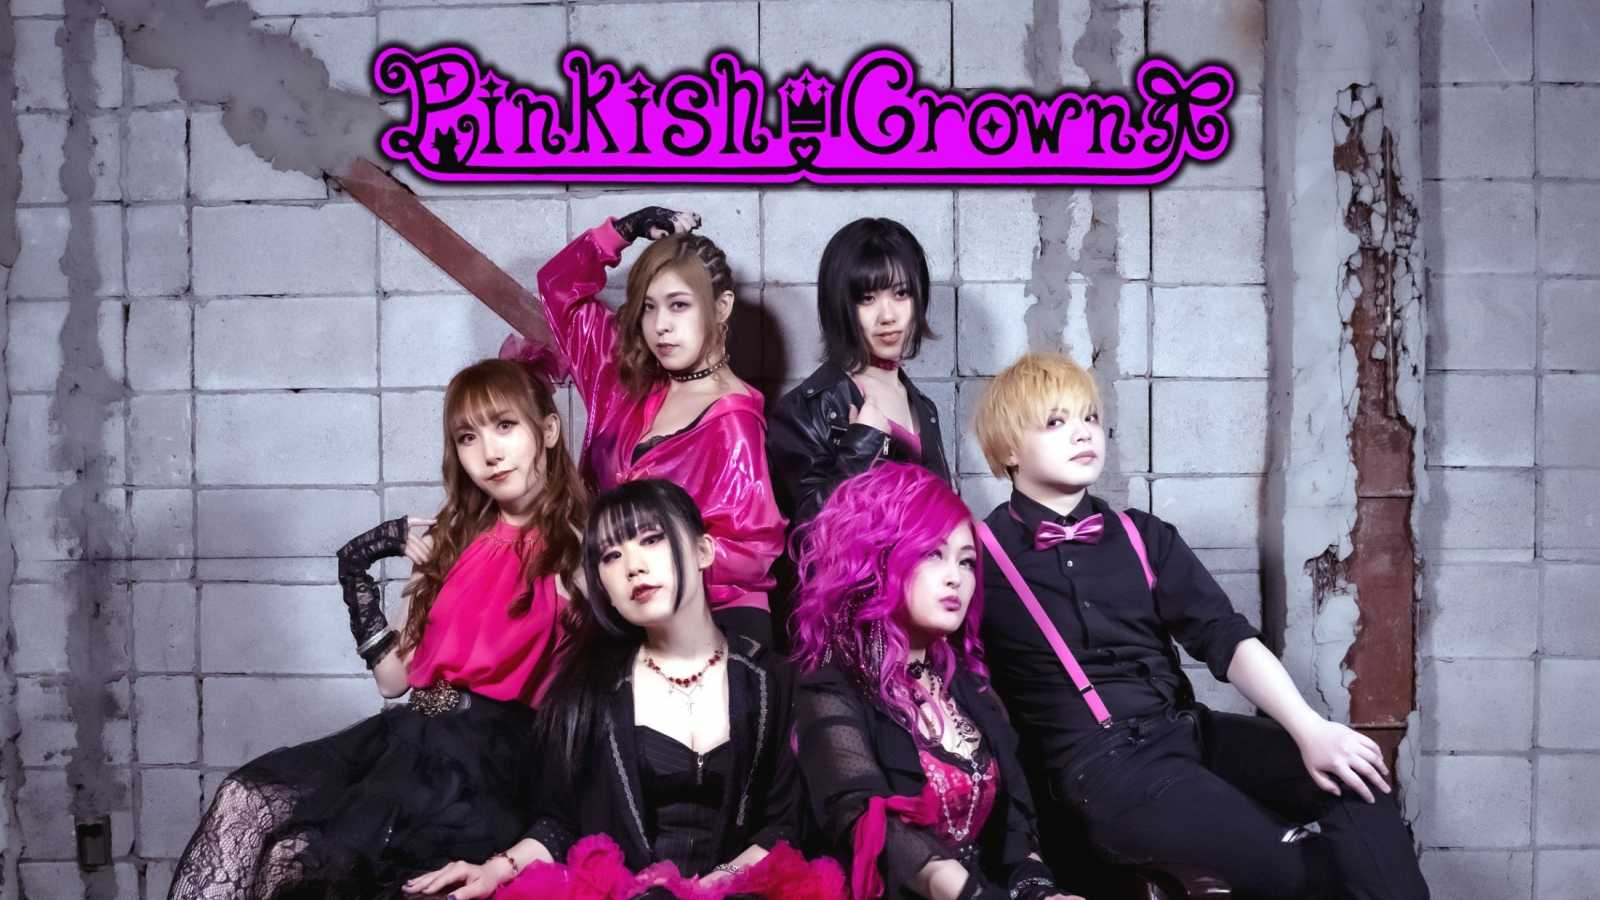 Pinkish Crown © 